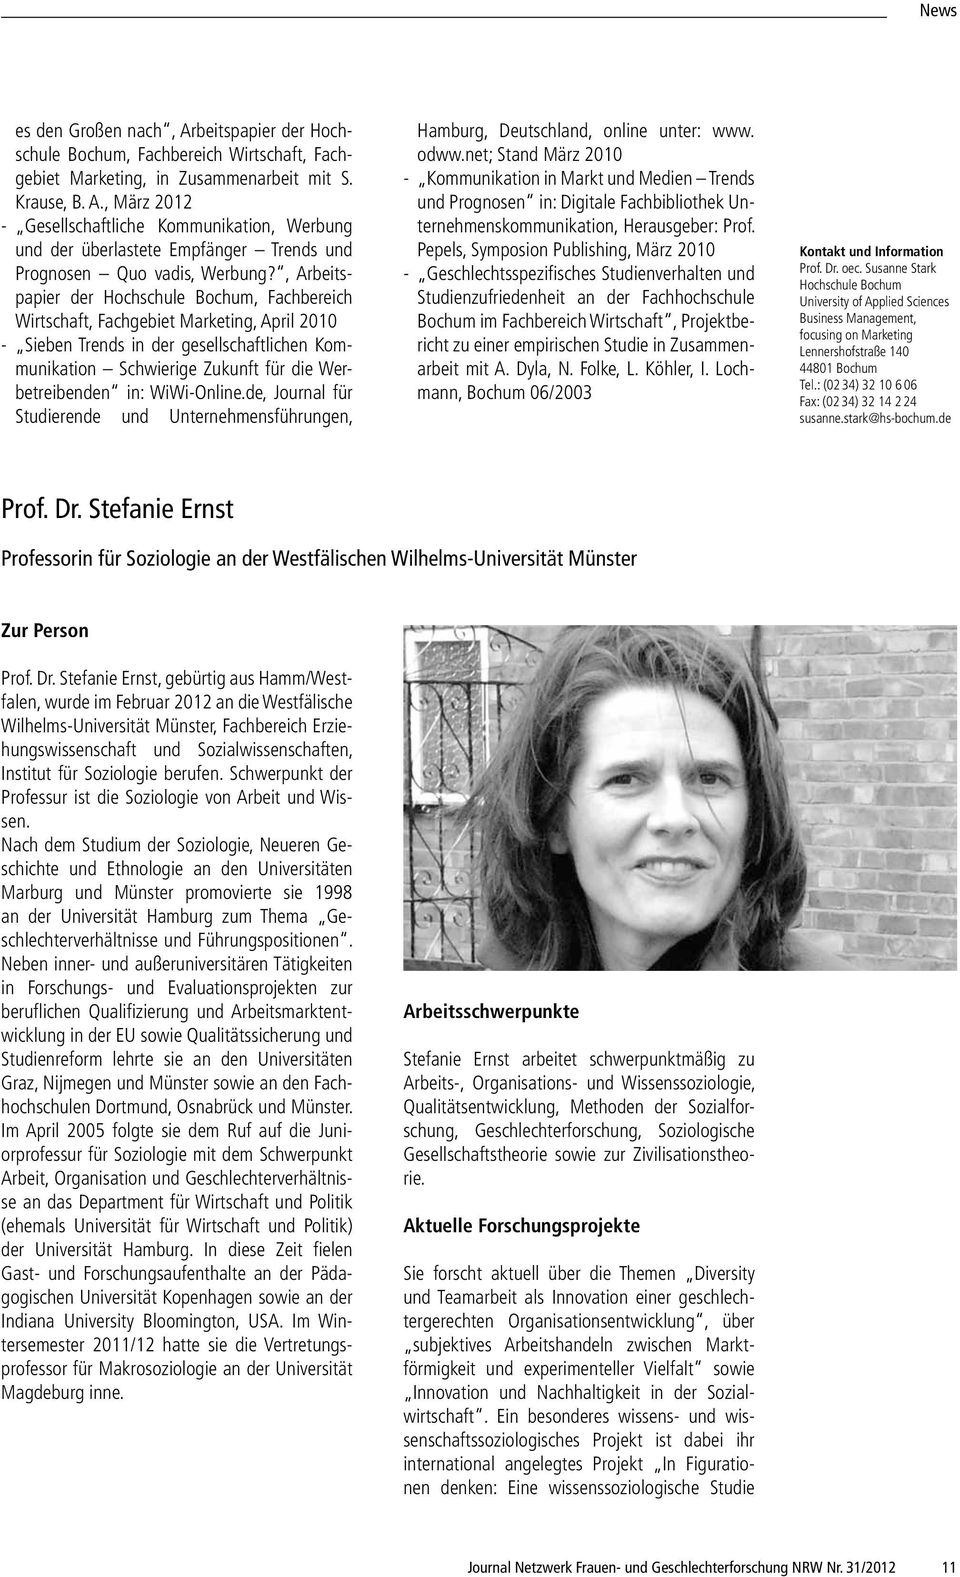 WiWi-Online.de, Journal für Studierende und Unternehmensführungen, Hamburg, Deutschland, online unter: www. odww.